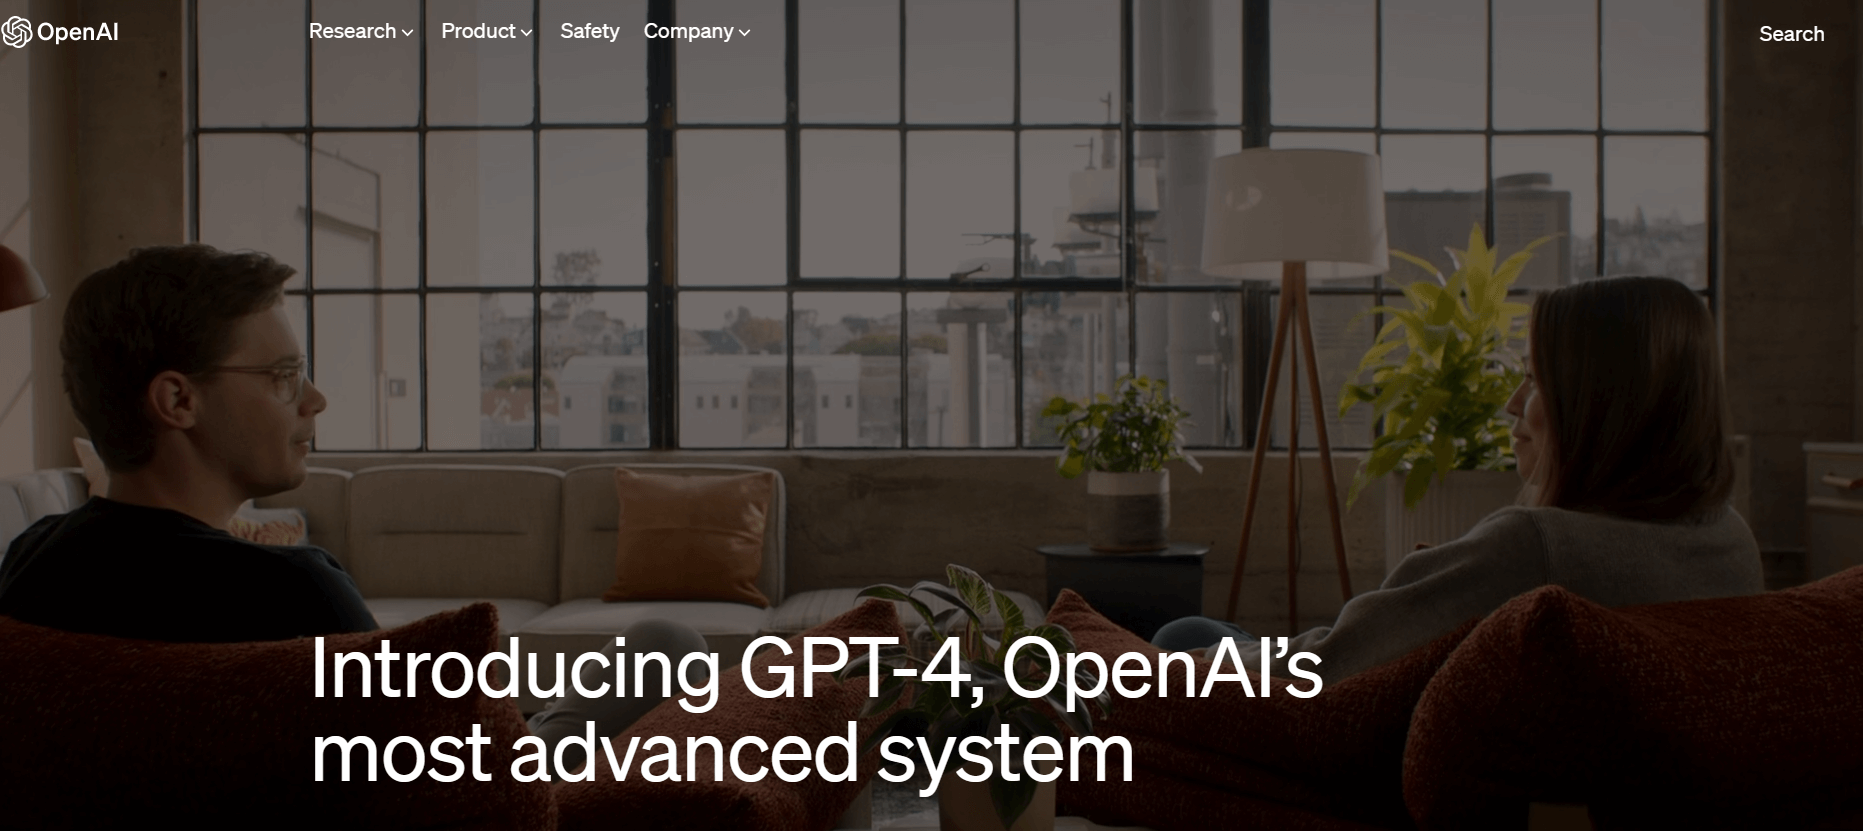 오픈ai 홈페이지에서 gtp4가 가장진화된 시스템이라 말하고 있다